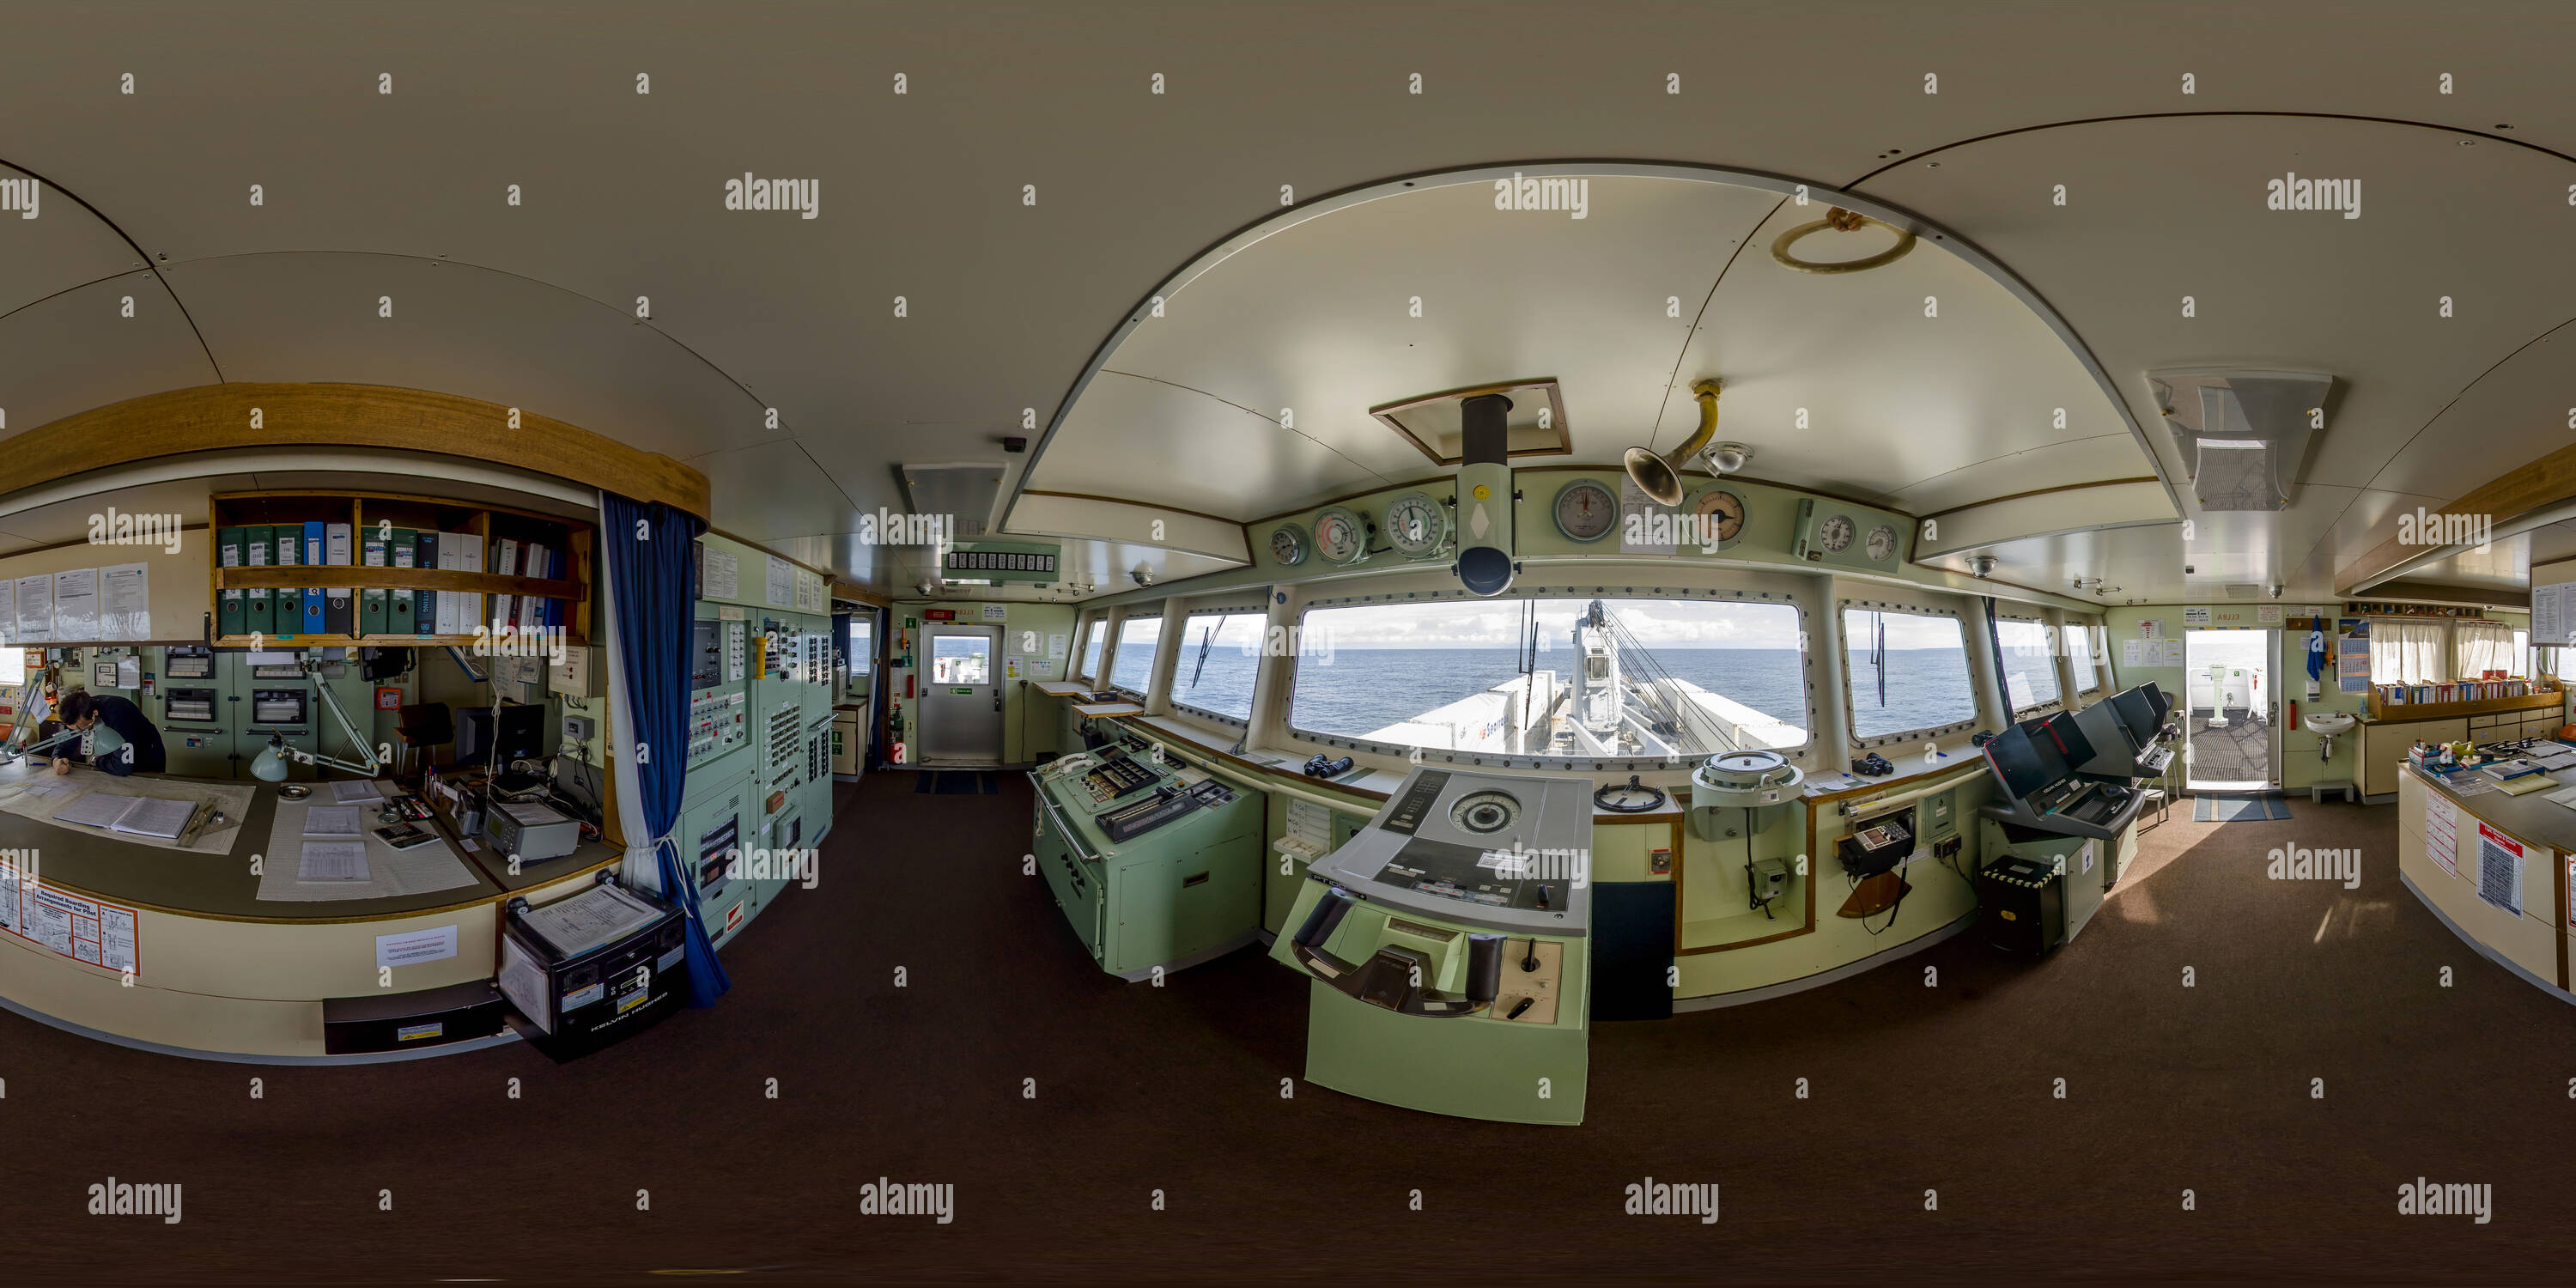 360 degree panoramic view of Bridge of m/v Atlantic Mermaid